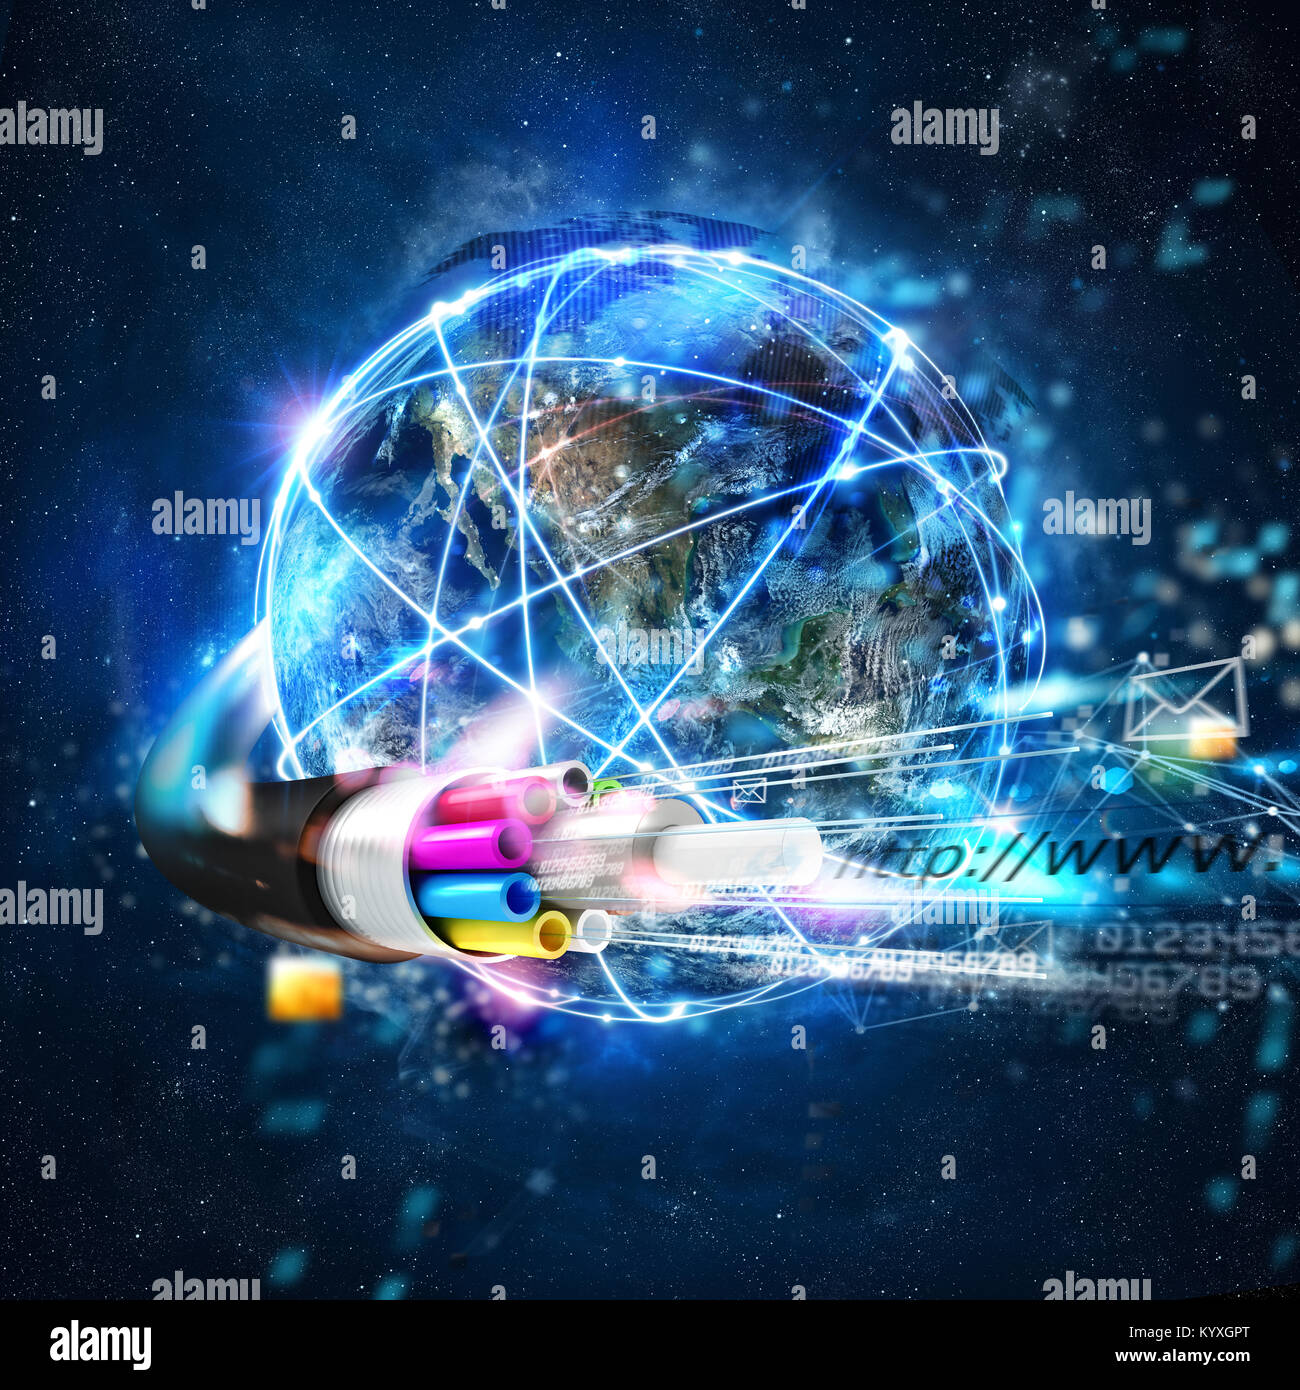 Connexion internet rapide dans le monde entier avec la fibre optique Banque D'Images